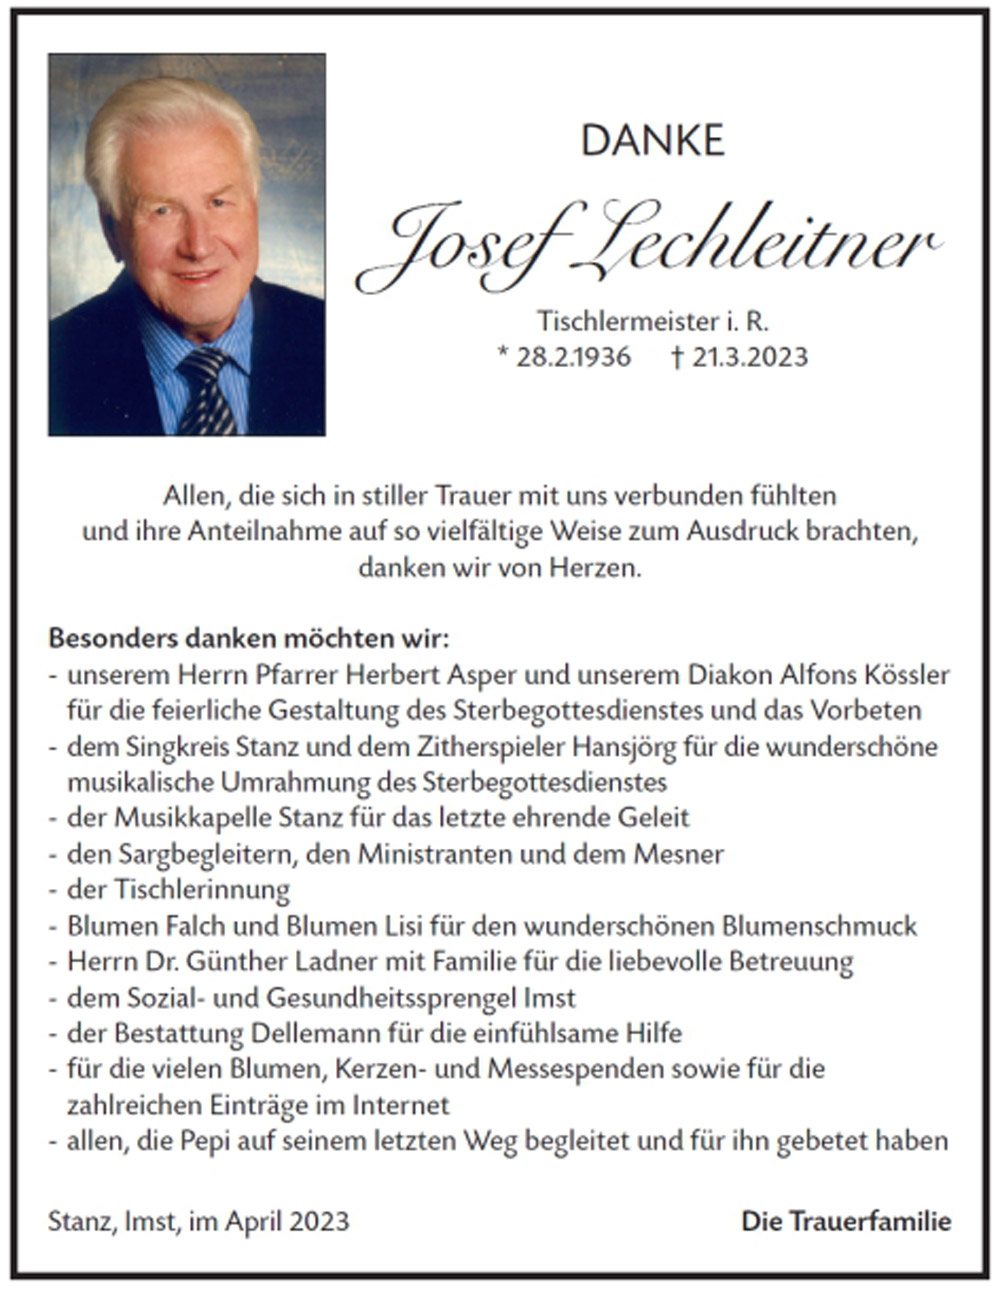 Josef Lechleitner 